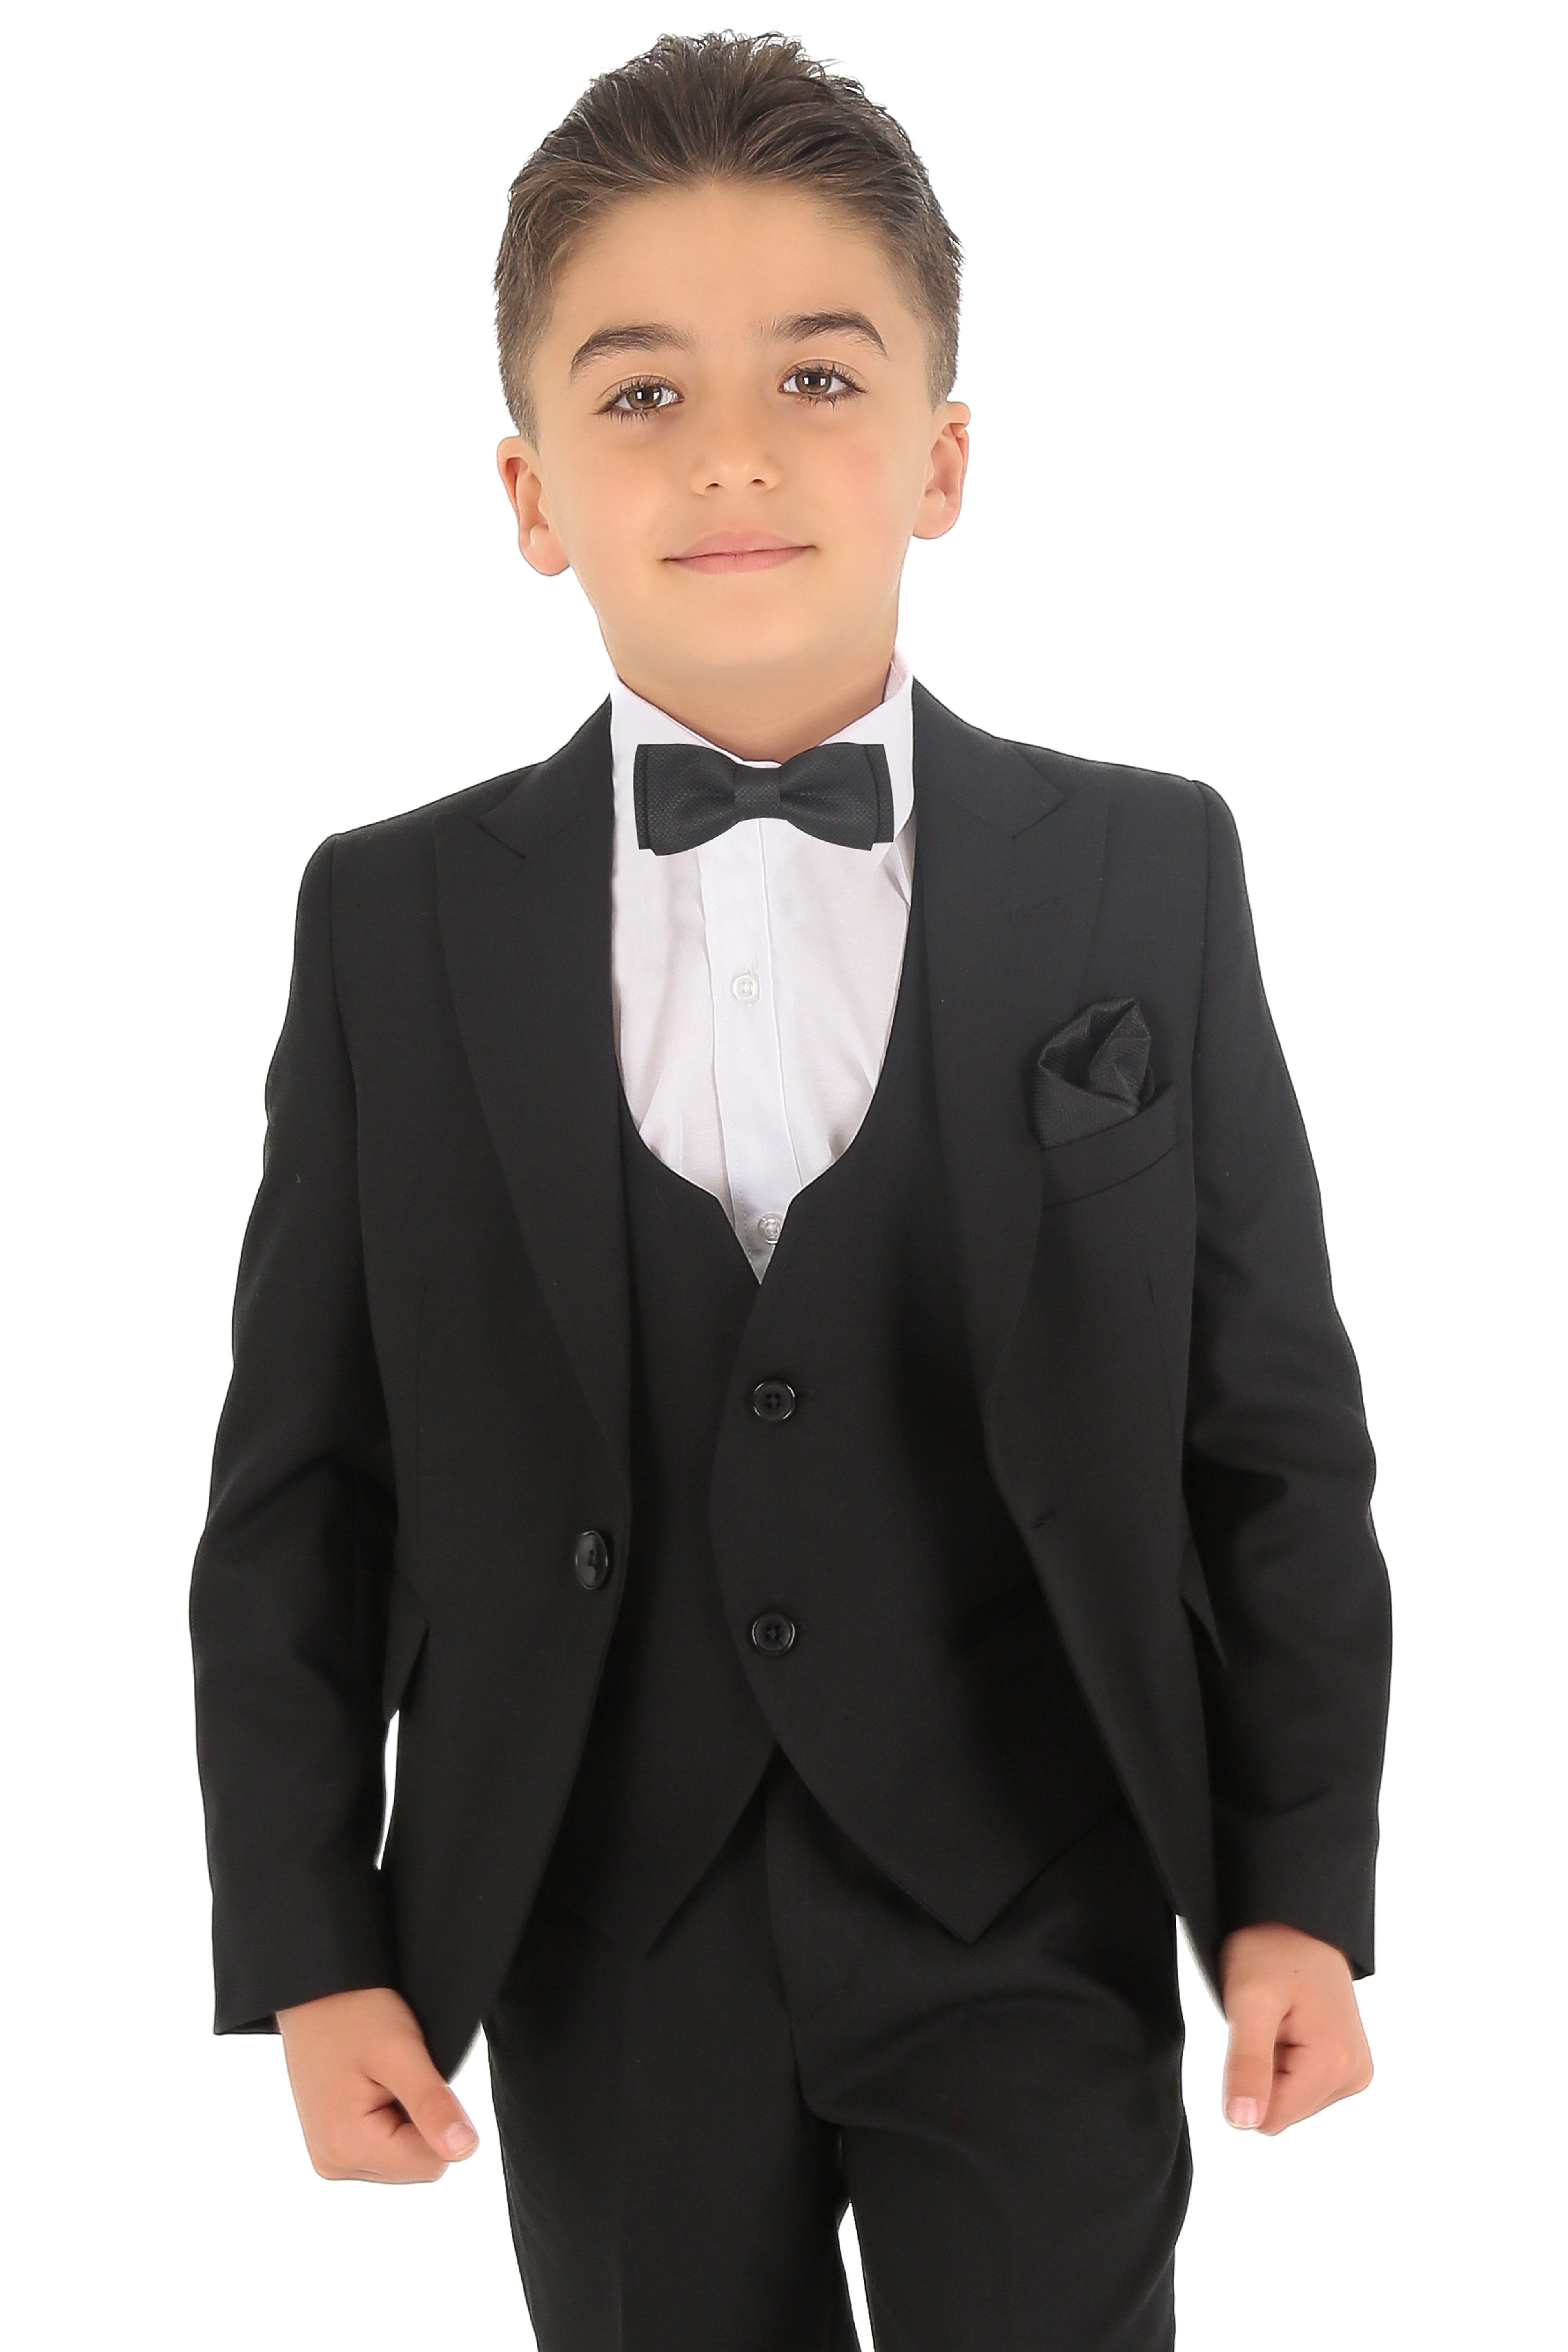 1-15 Yaş Erkek Çocuk King Özel Tasarım Takım Elbise 6 Parça - Siyah